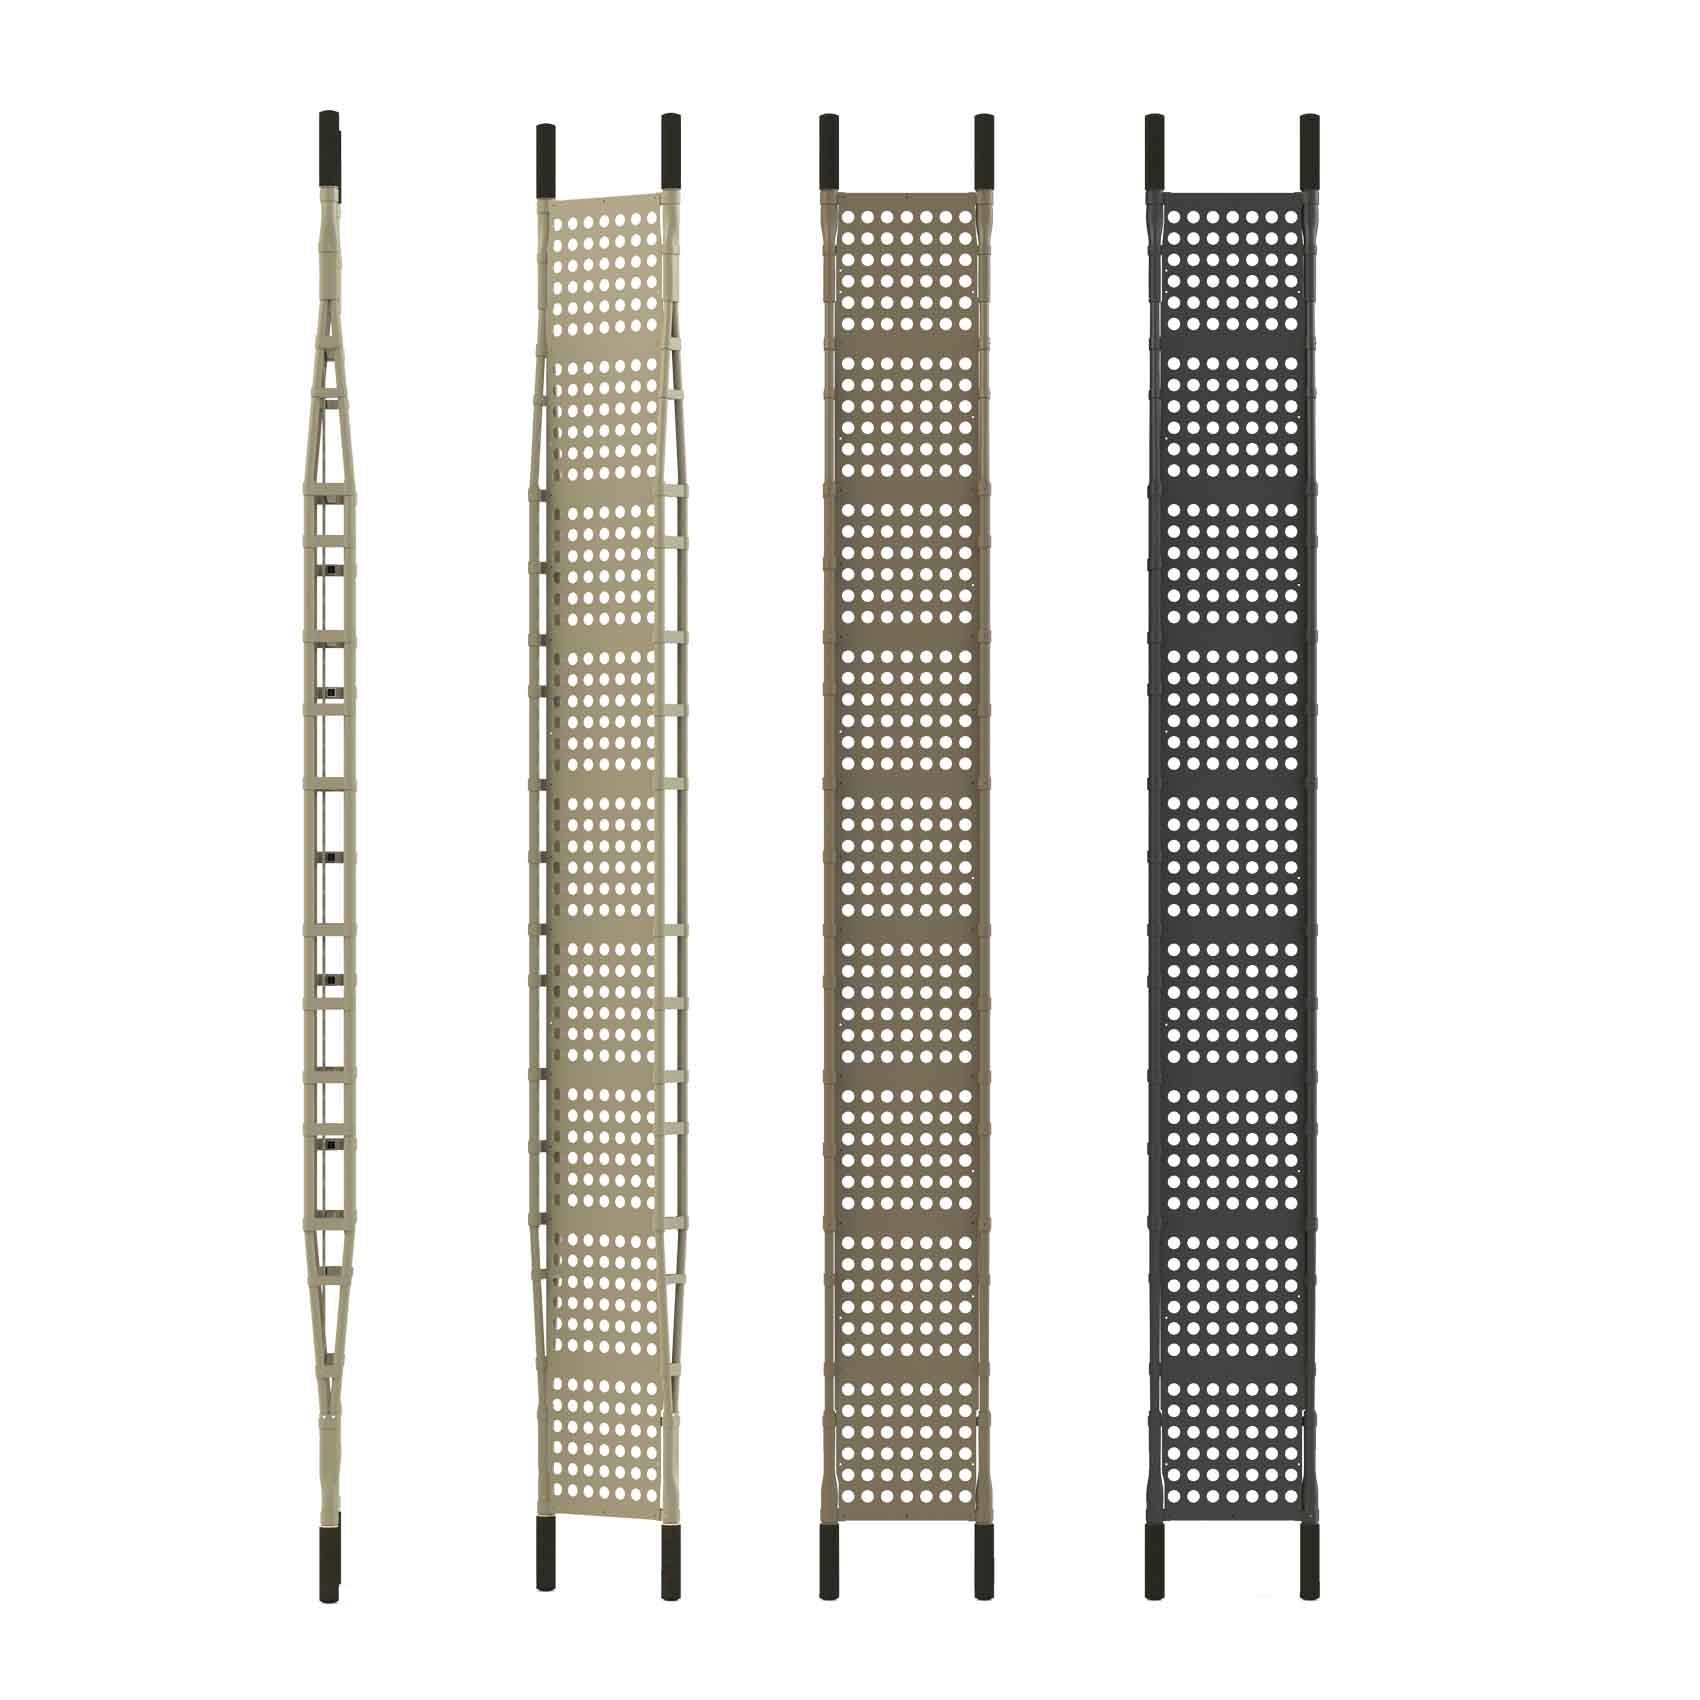 Truss Bridging / Climbing Ladder 110 ' x 12" K9